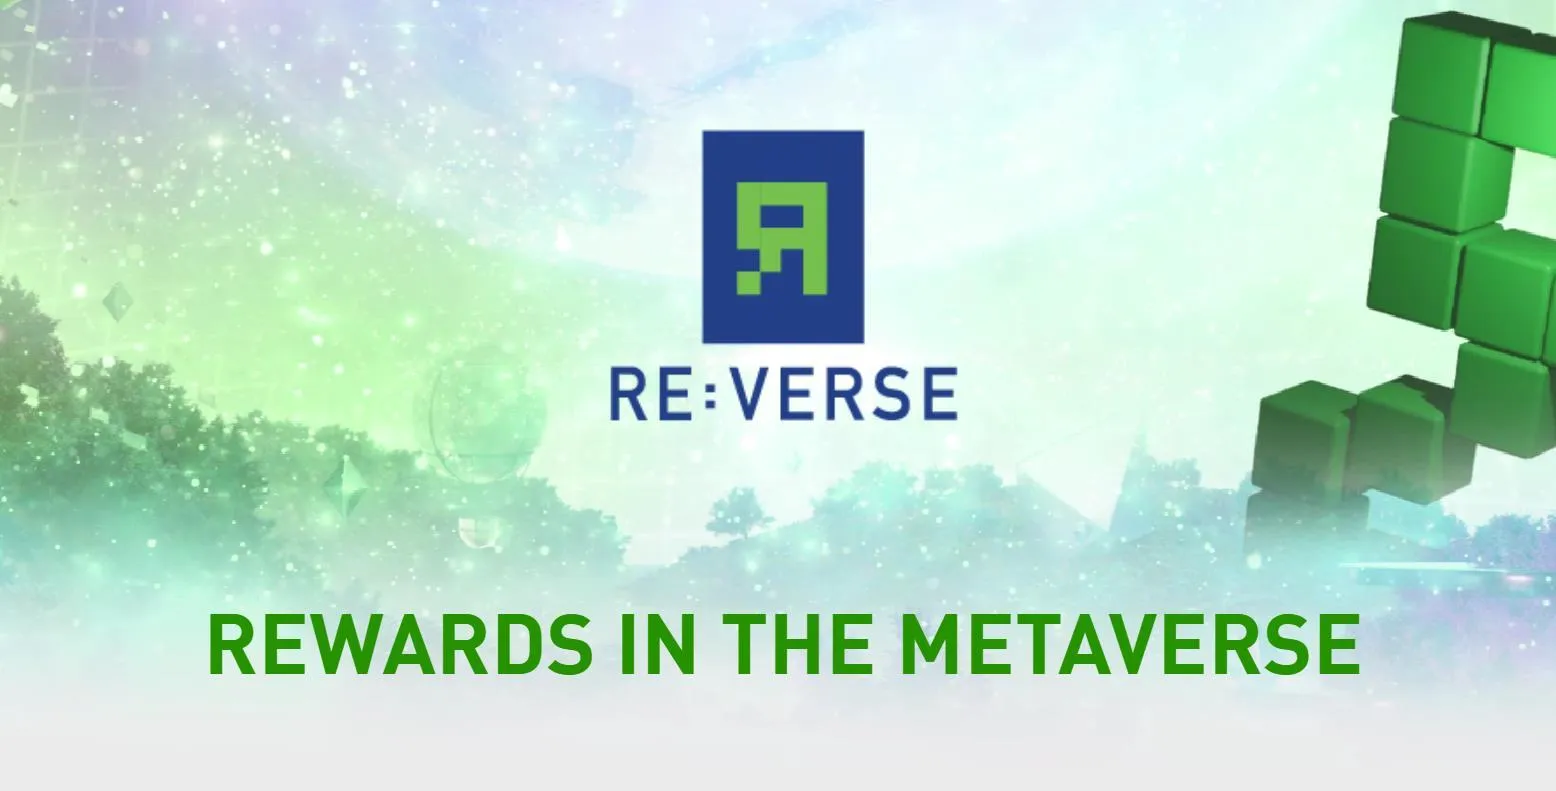 全球积分项目颠覆者 ReverseDAO 举办首届发布会和投资研讨会